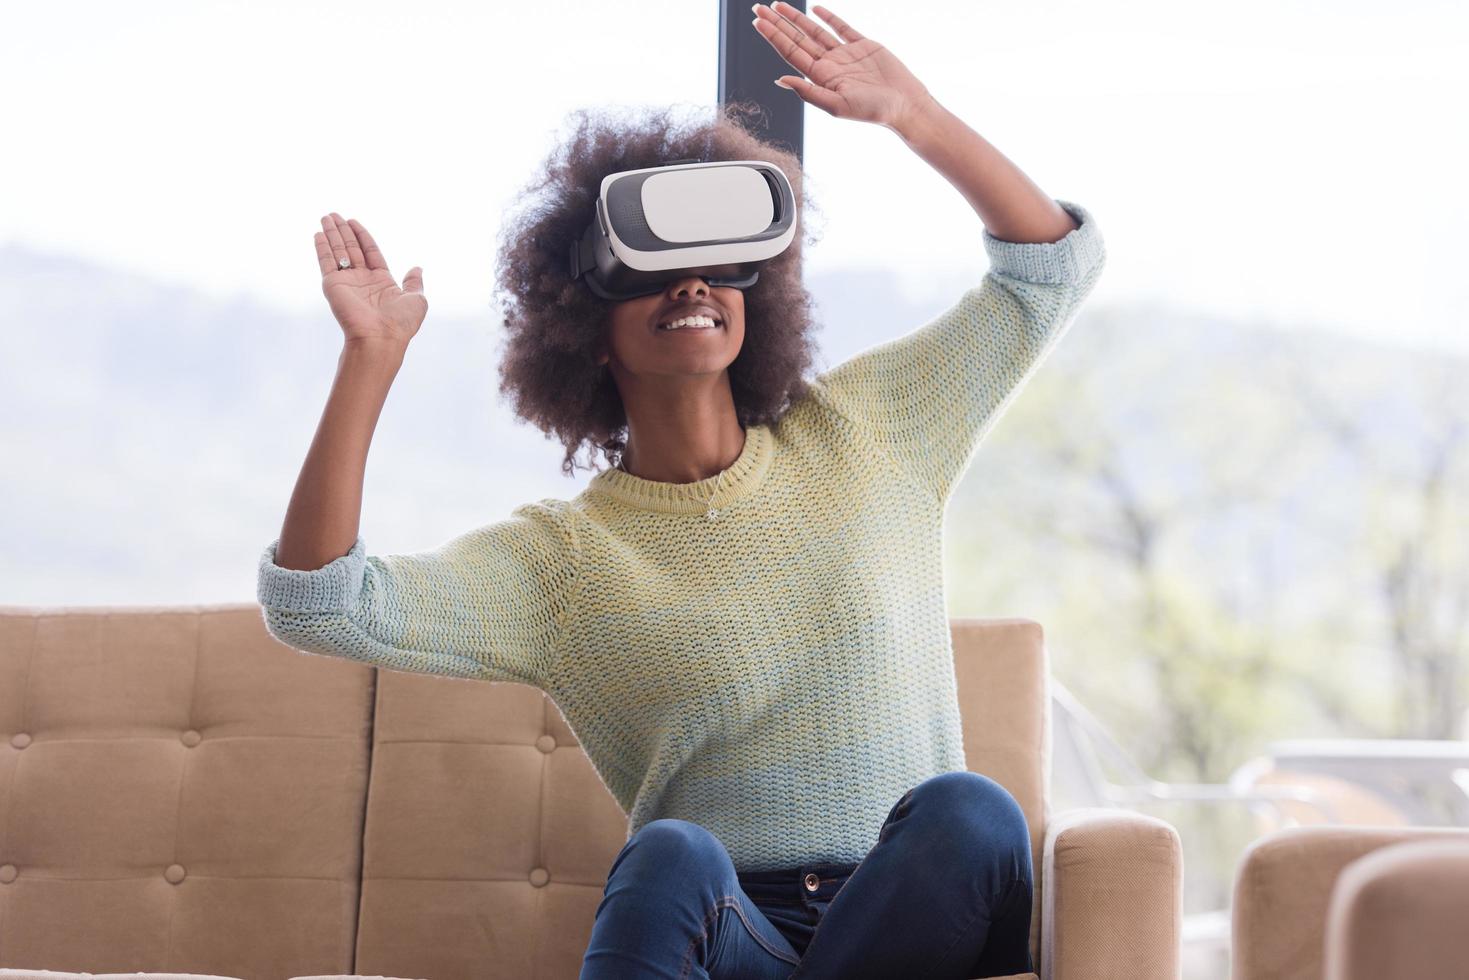 mujer negra con auriculares vr gafas de realidad virtual foto